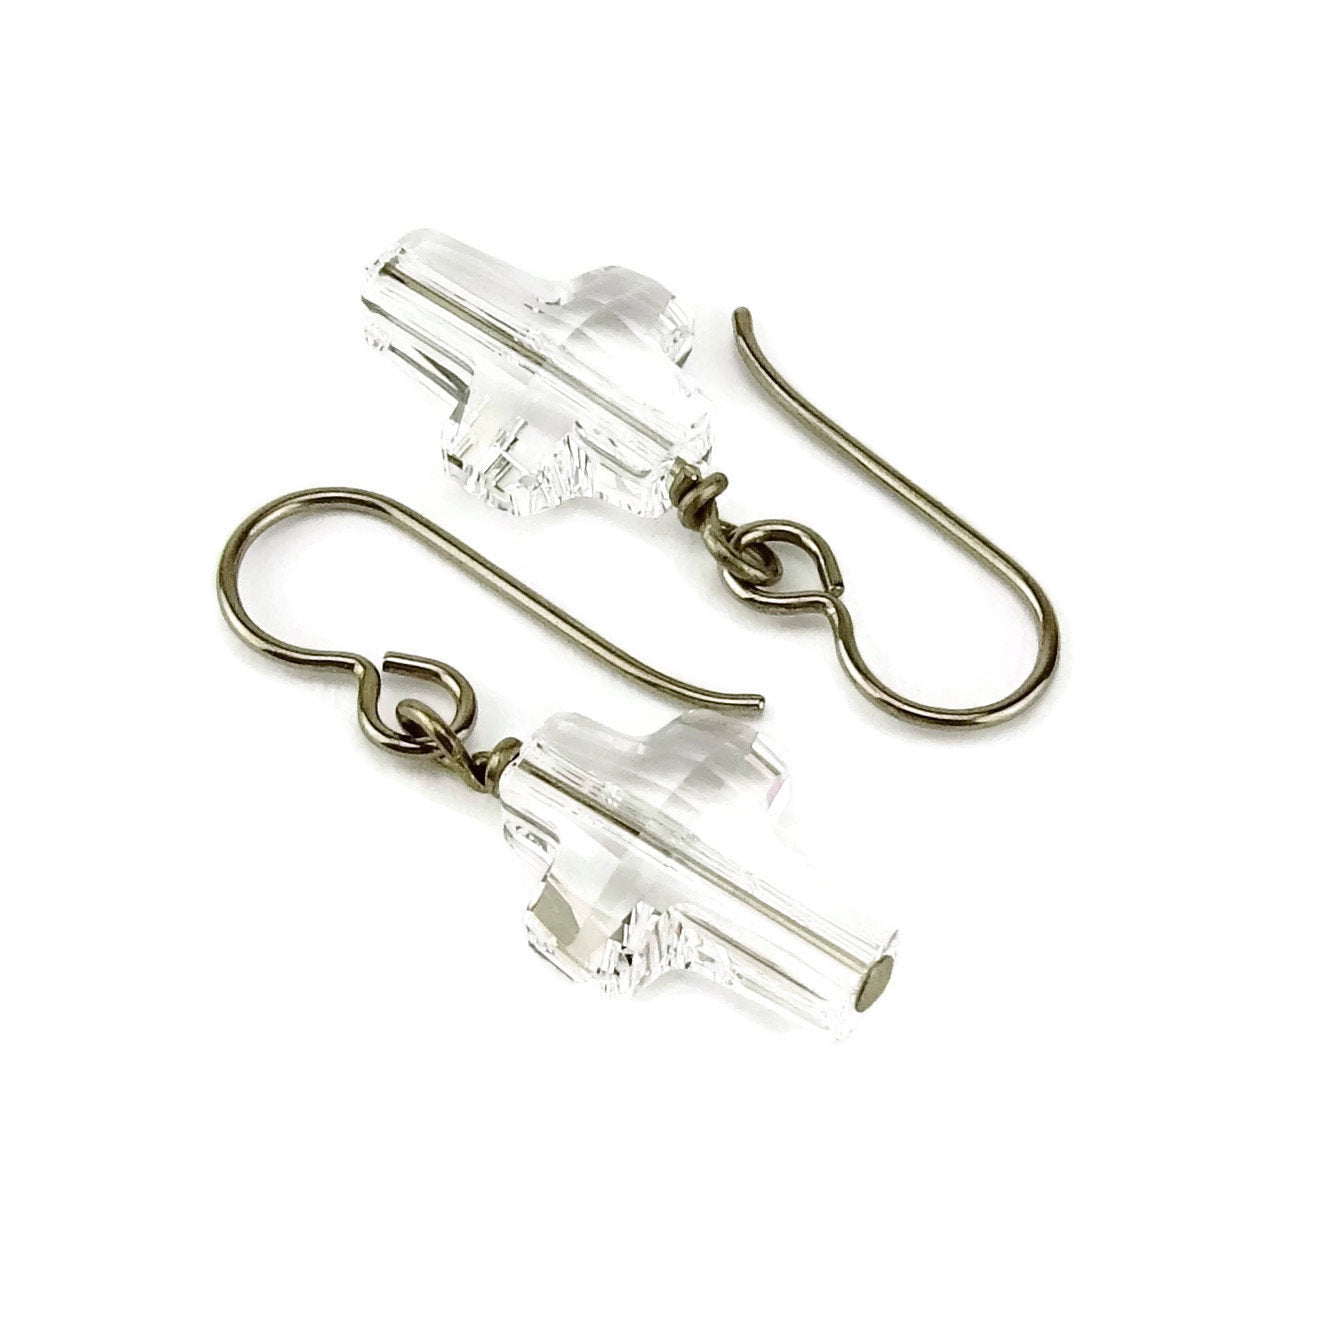 Clear Crystal Cross Titanium Earrings, Swarovski Crystal Cross Earrings for Sensitive Ears on Nickel Free Niobium or Titanium Earwires,